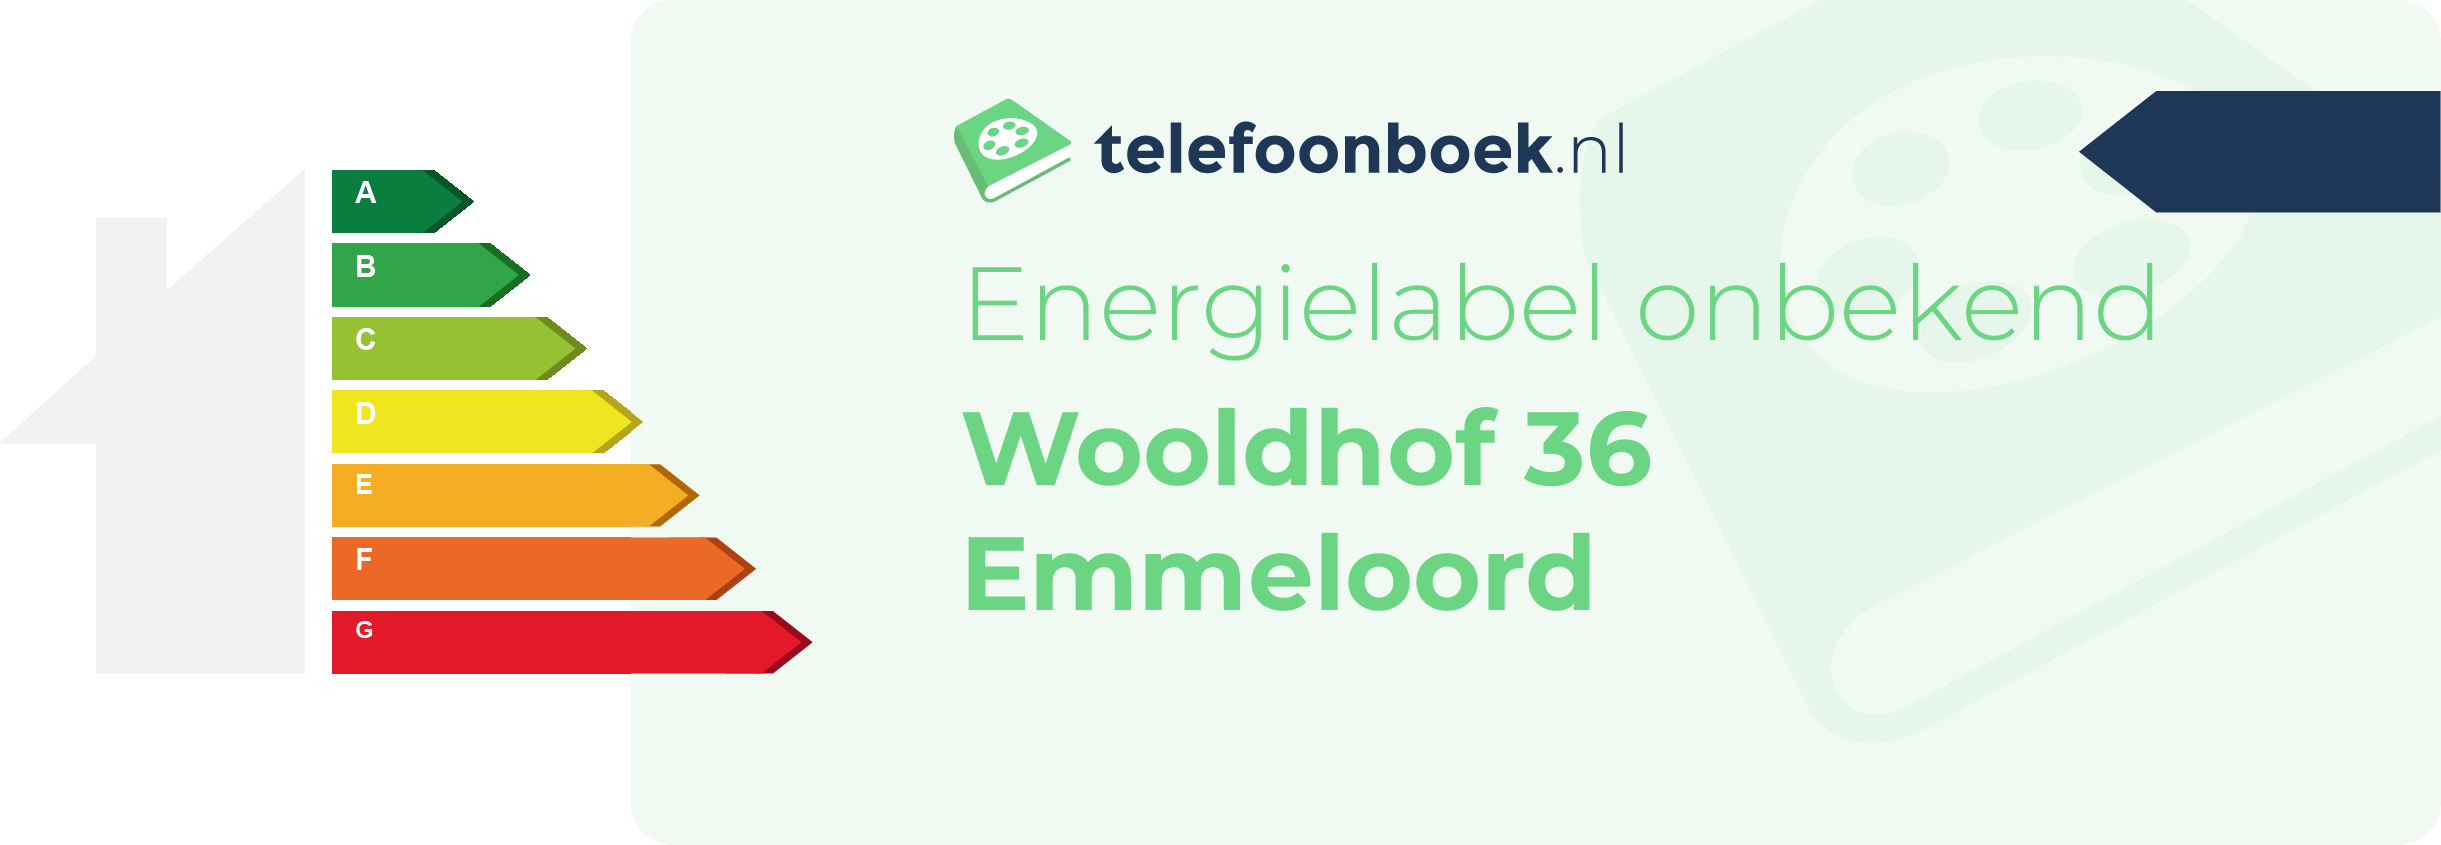 Energielabel Wooldhof 36 Emmeloord